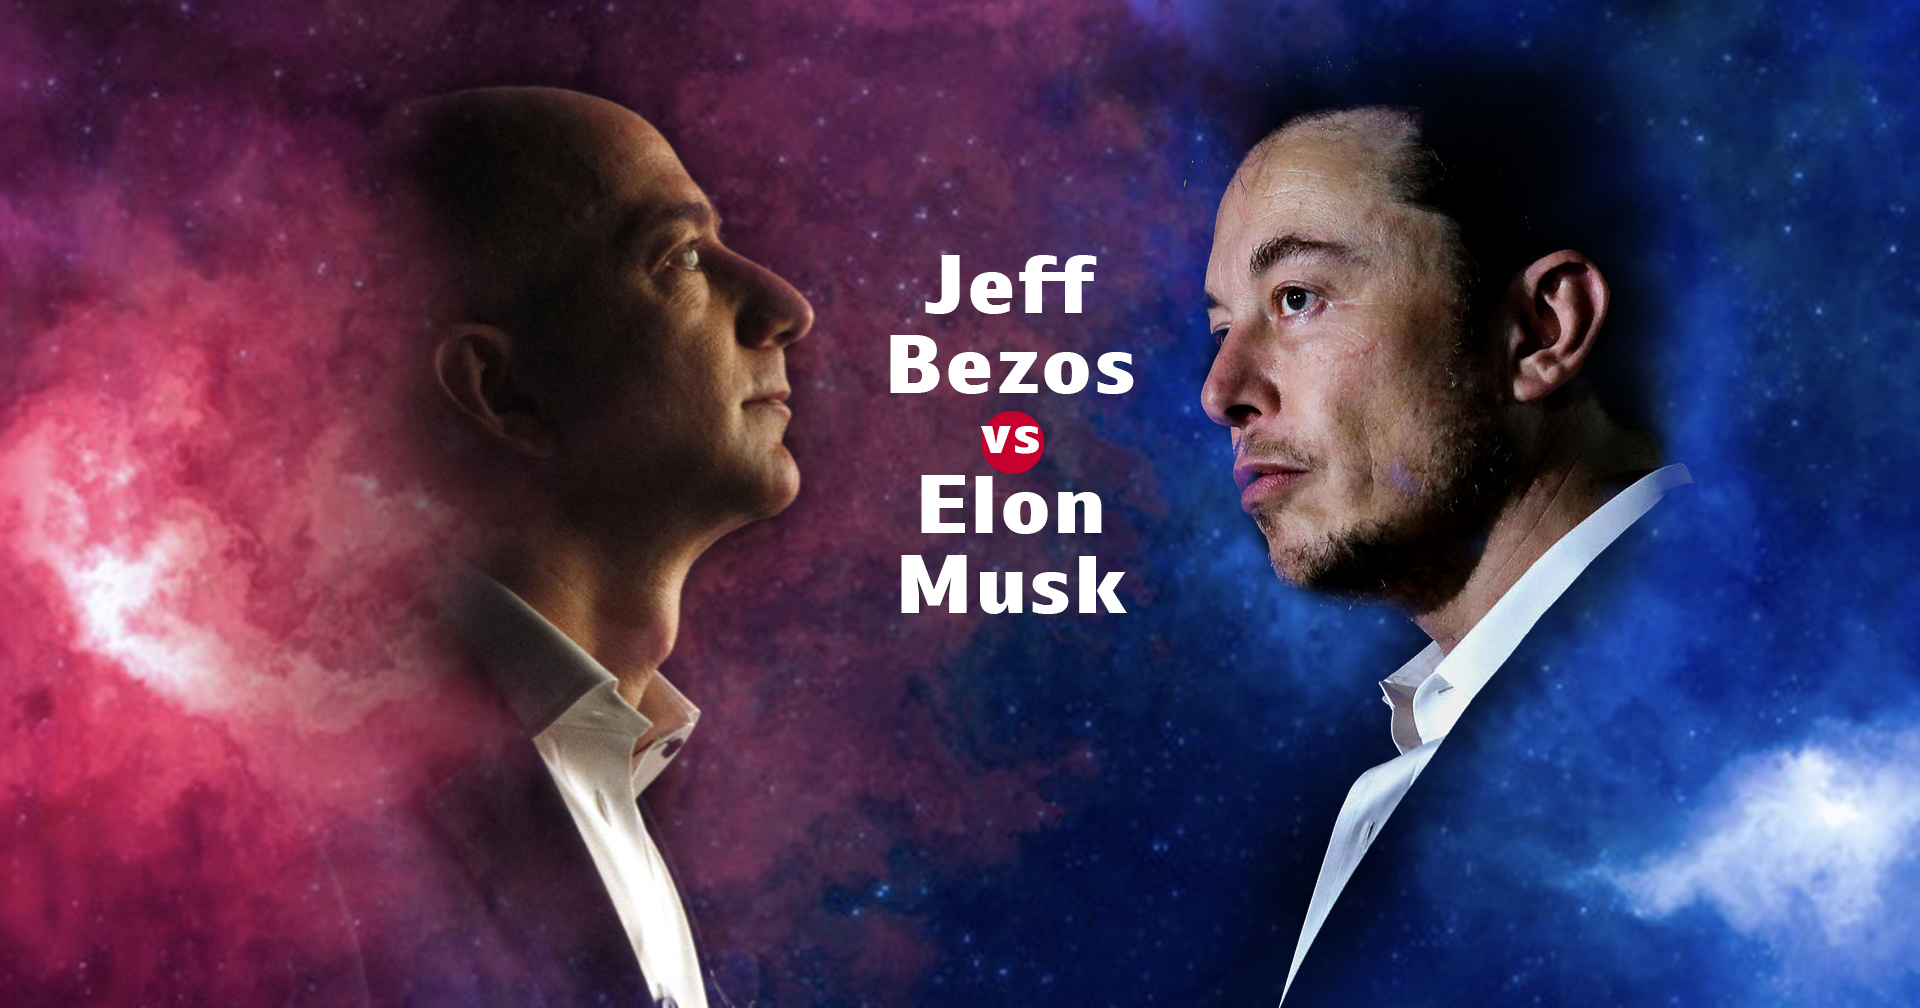 15 ปีของคู่ปรับ Jeff Bezos และ Elon Musk สองยักษ์ใหญ่แห่งวงการเทคโนโลยีและท่องอวกาศ